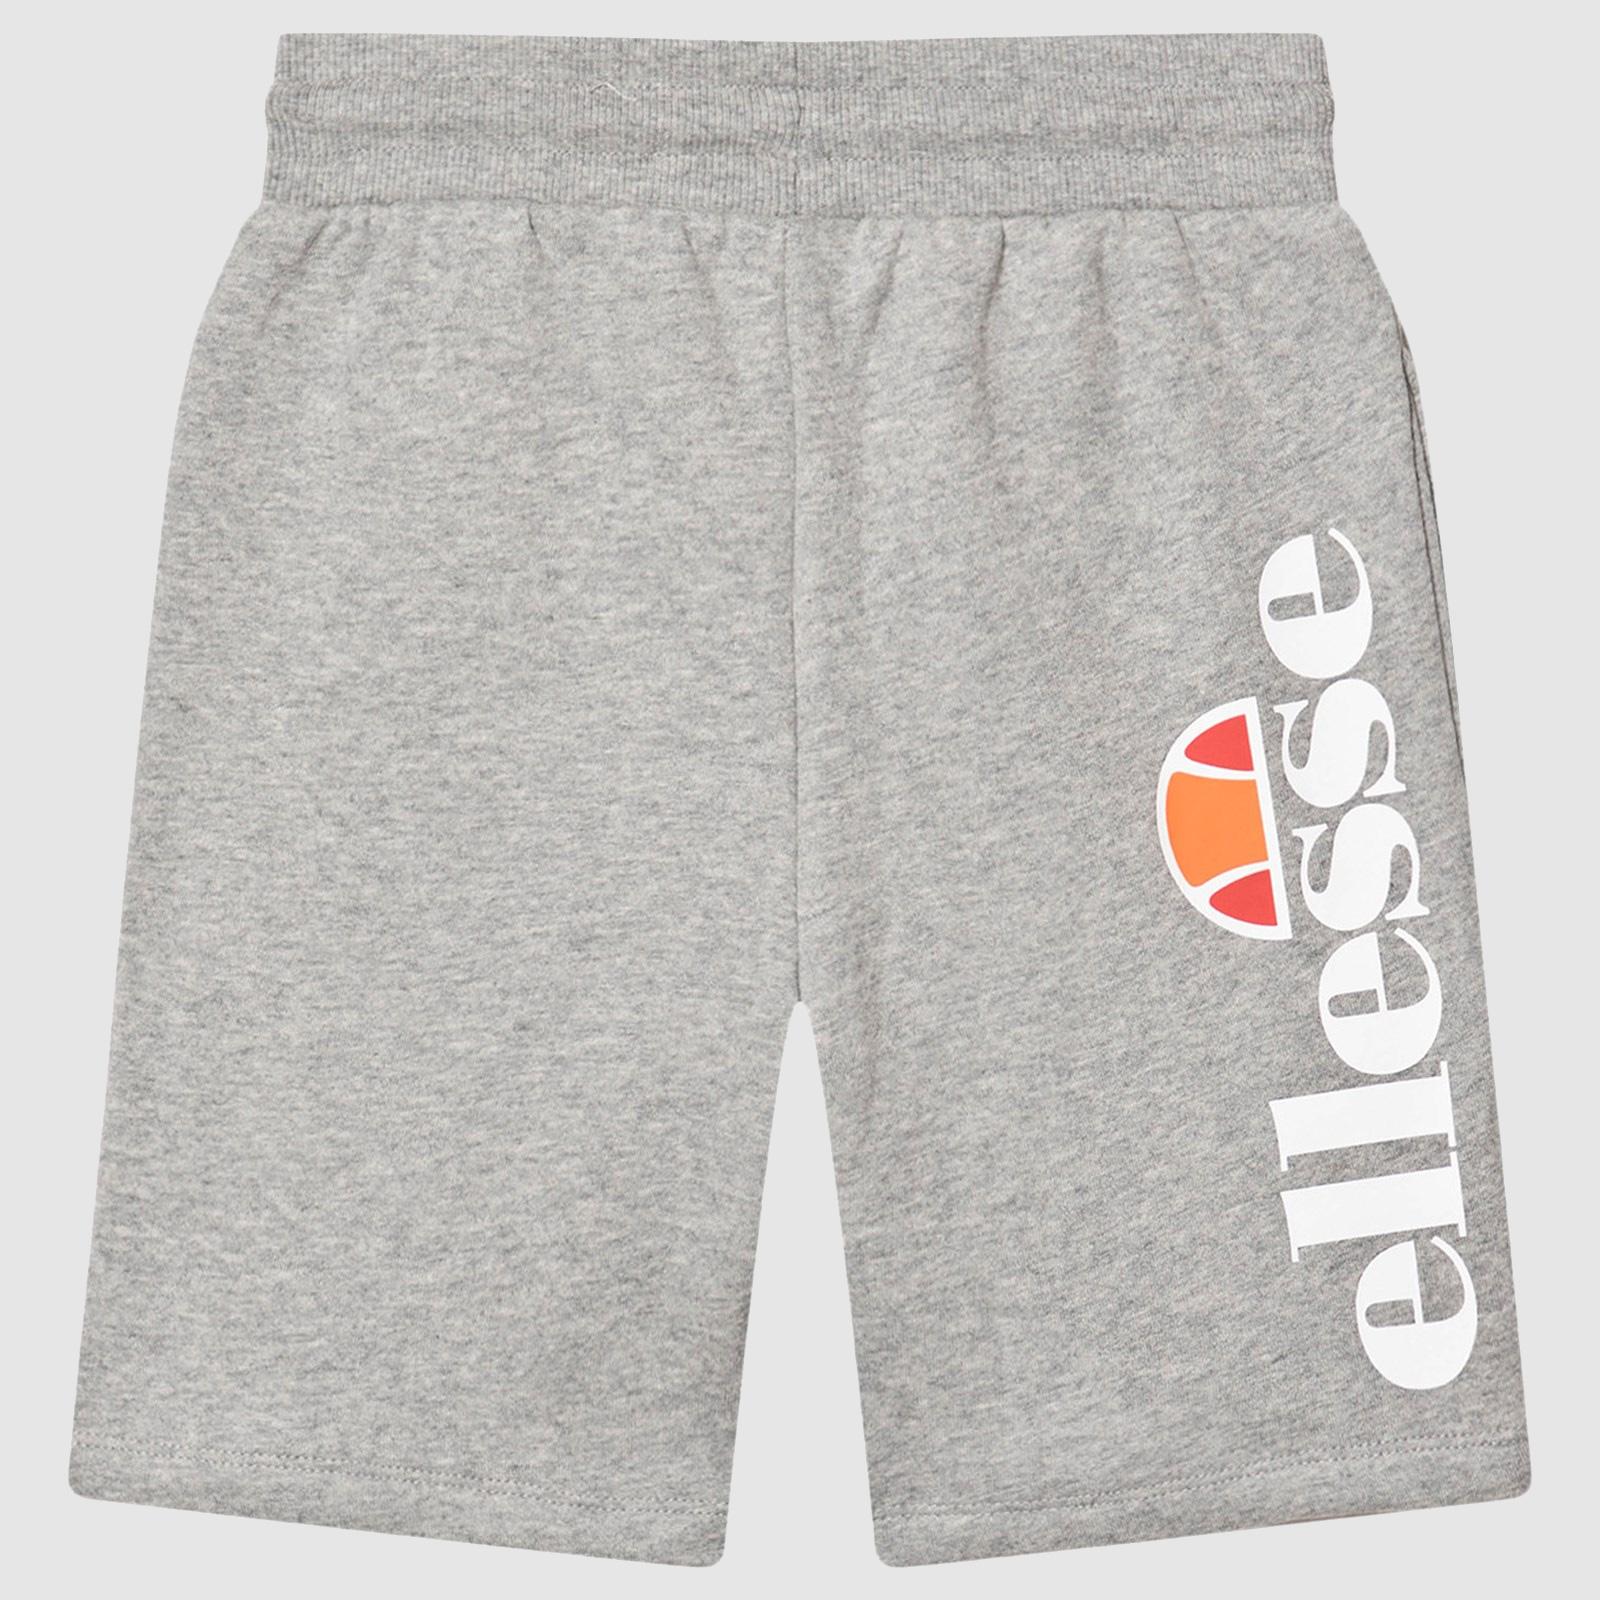 Ellesse Boys Toyle Shorts - Grey Marl - Tennisnuts.com